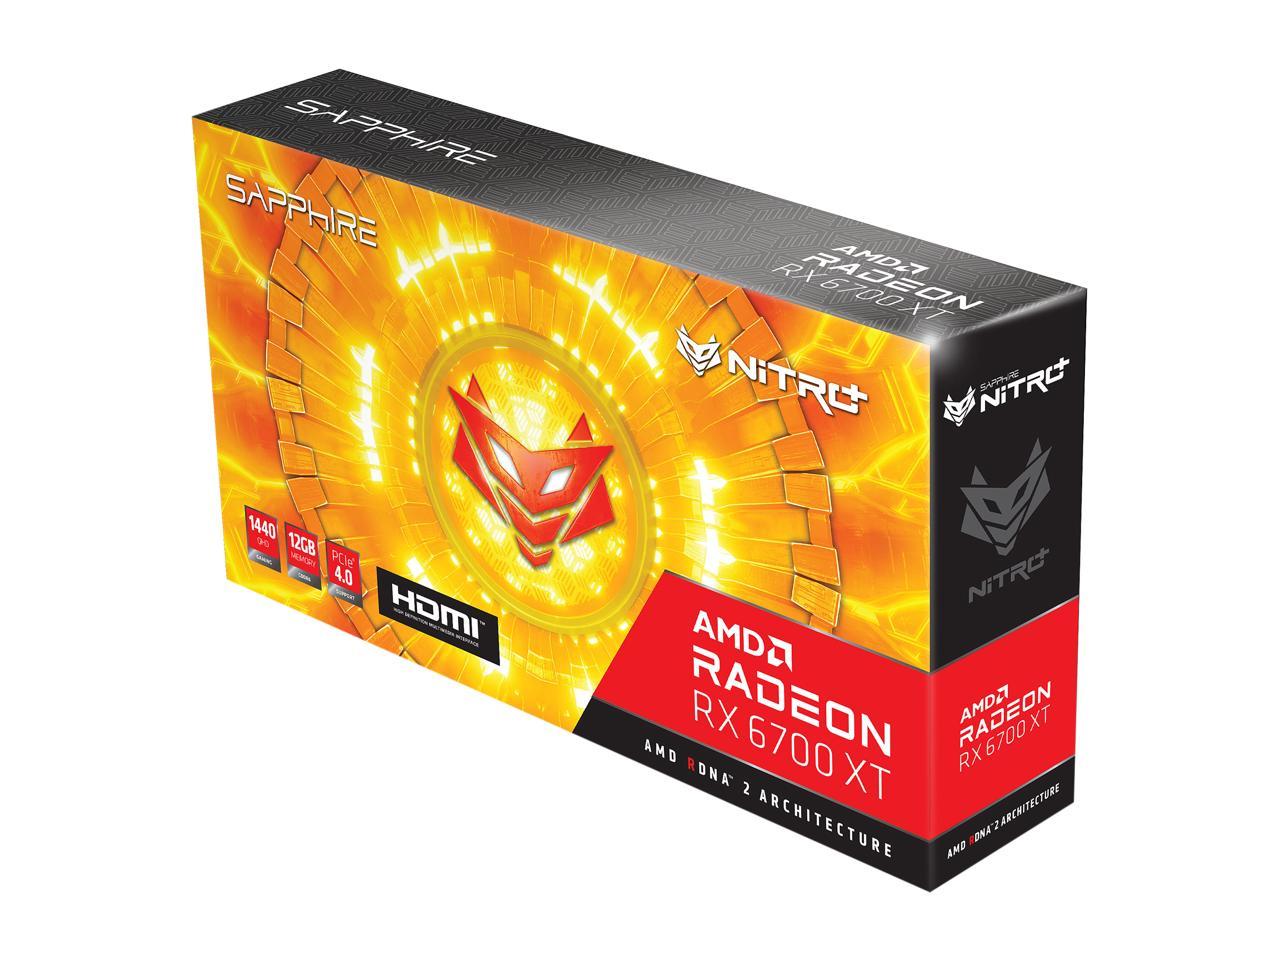 Sapphire Nitro+ Amd Radeon Rx 6700 Xt Gaming Oc Video Card, 12Gb Gddr6 Hdmi / Triple Dp (11306-01-20T)